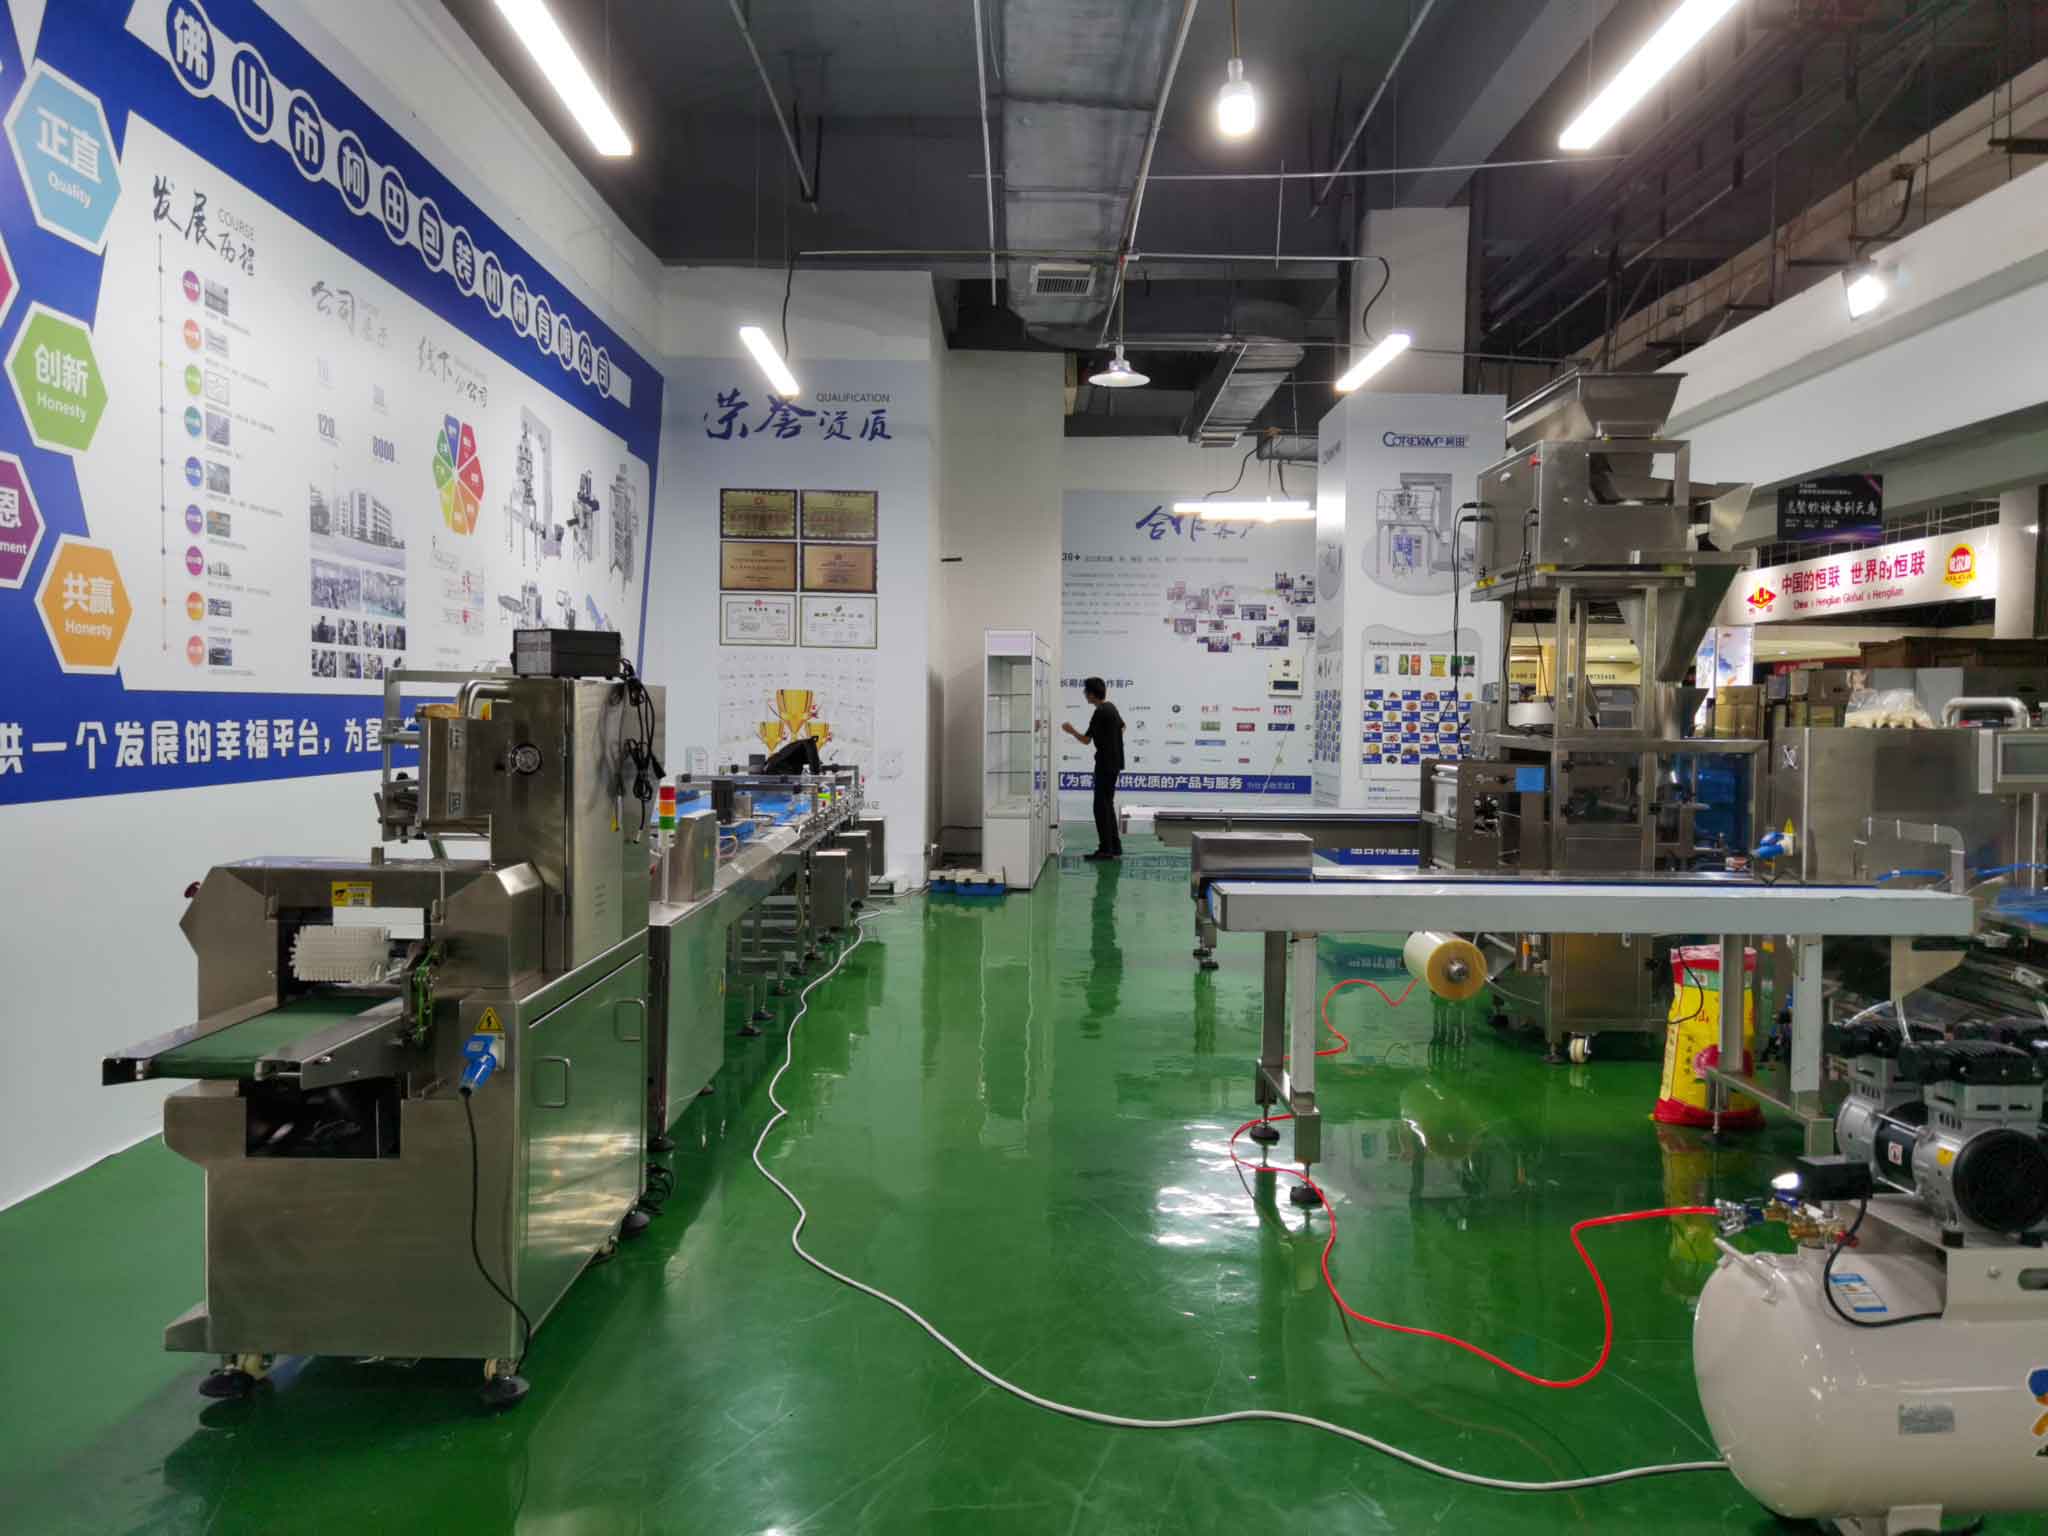 Выставочный зал упаковочных машин нашего филиала в Чэнду, Китай